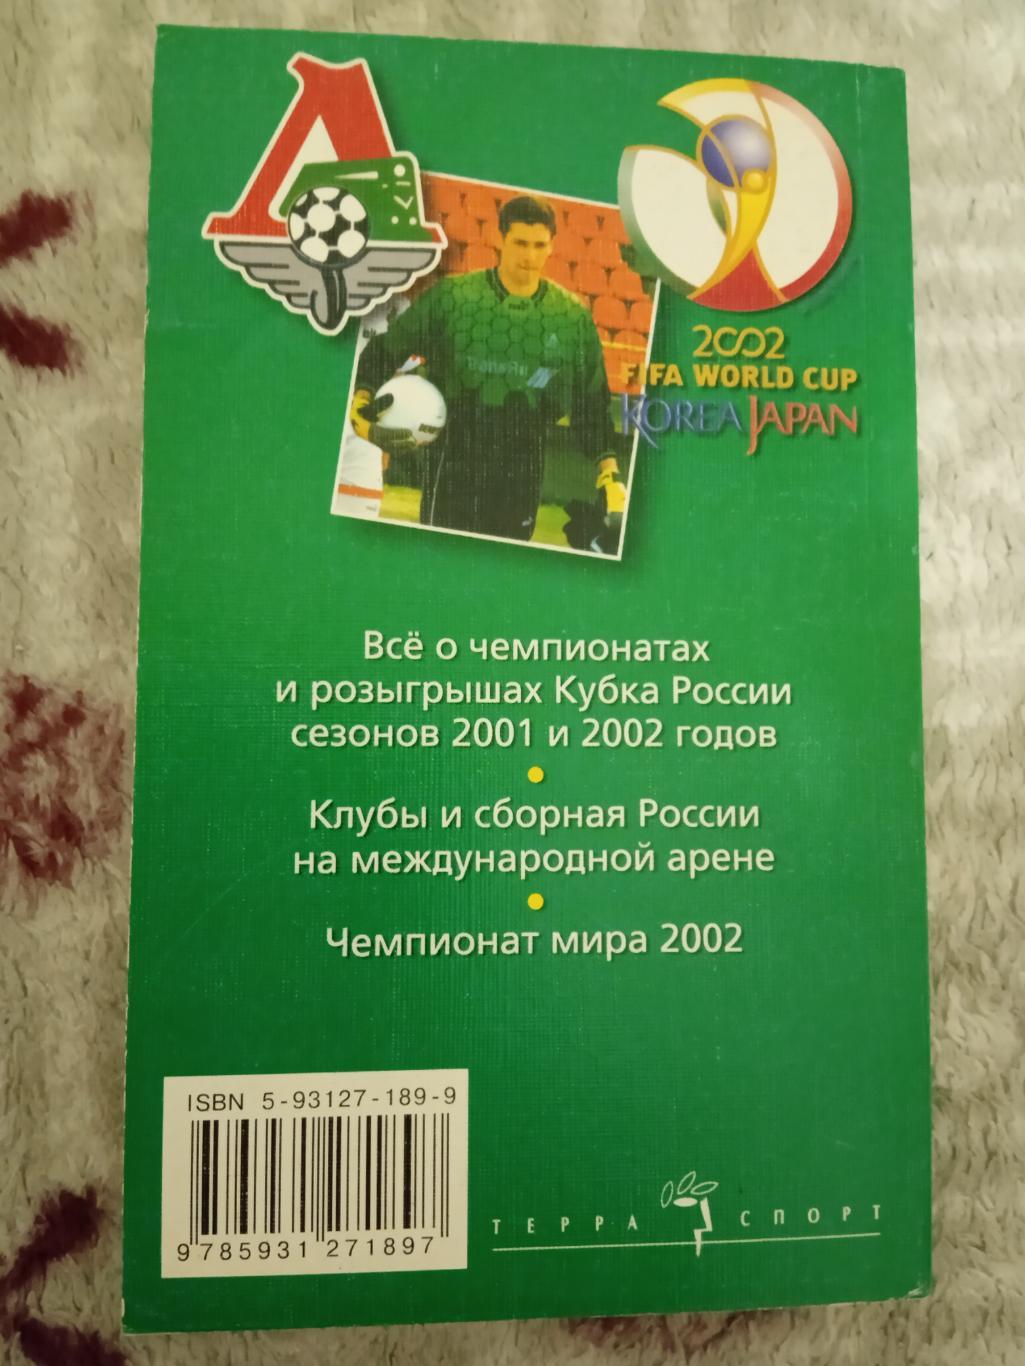 А.Савин.Футбол 02.Москва Терра-Спорт 2002 г. 1